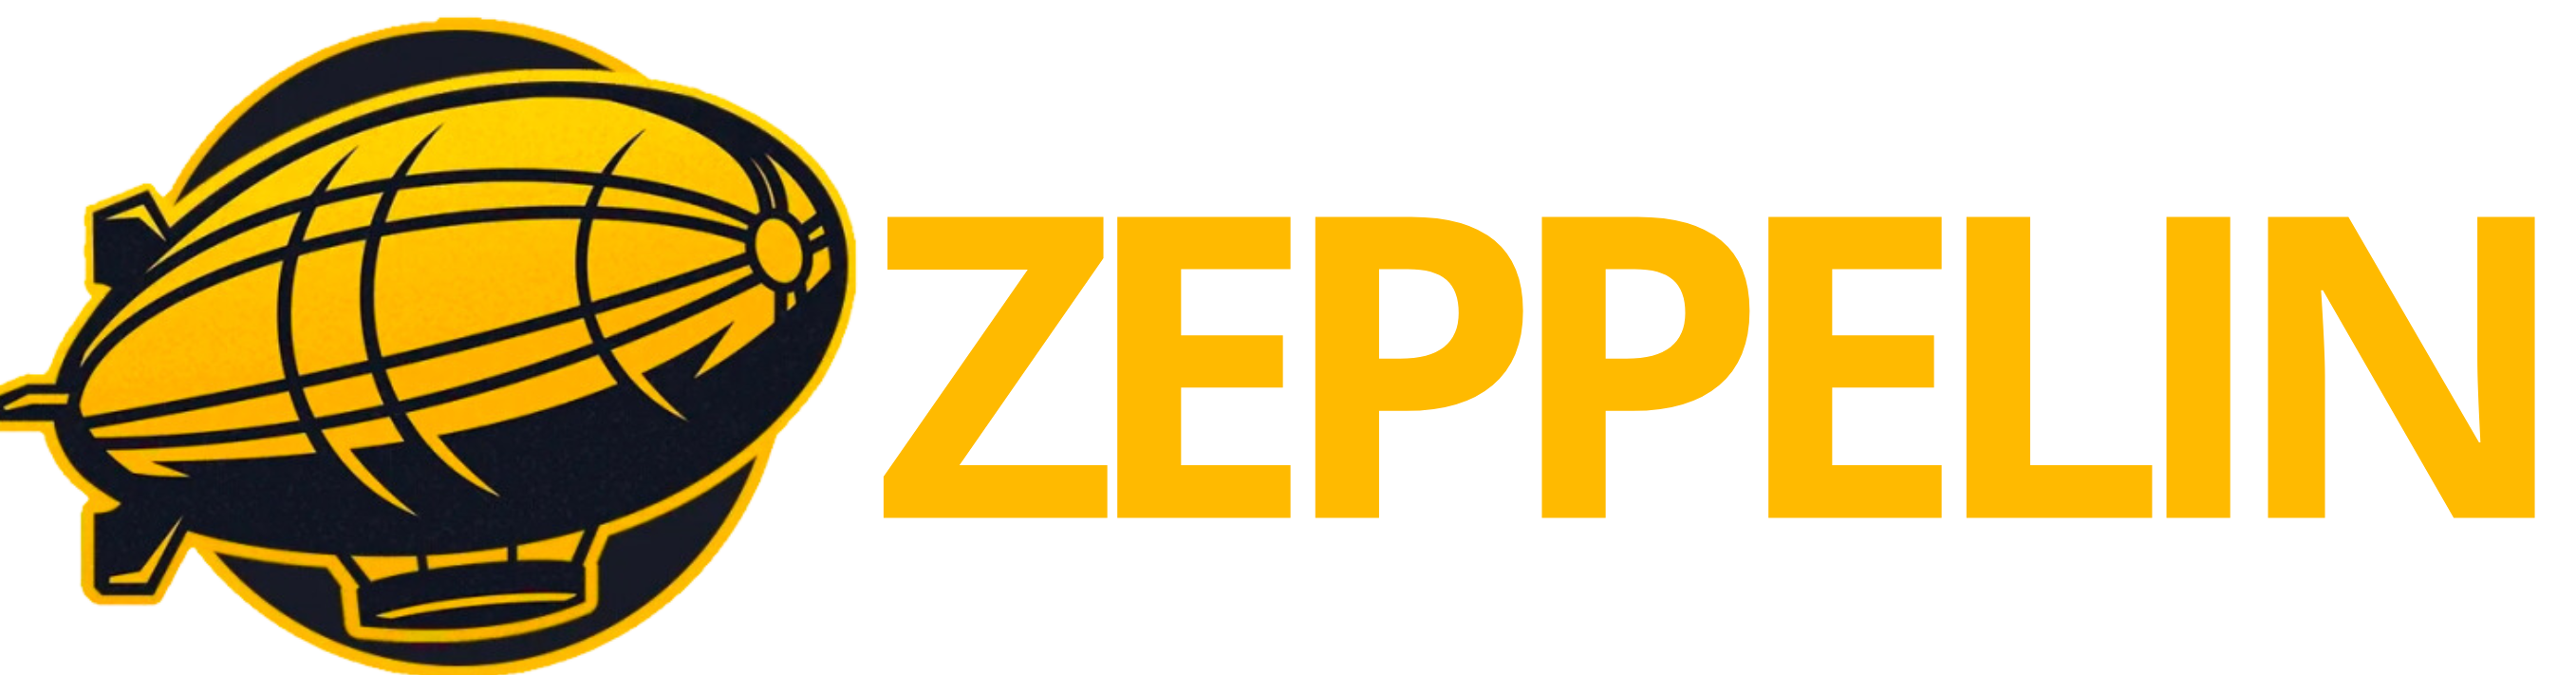 Zeppelin aposta logo